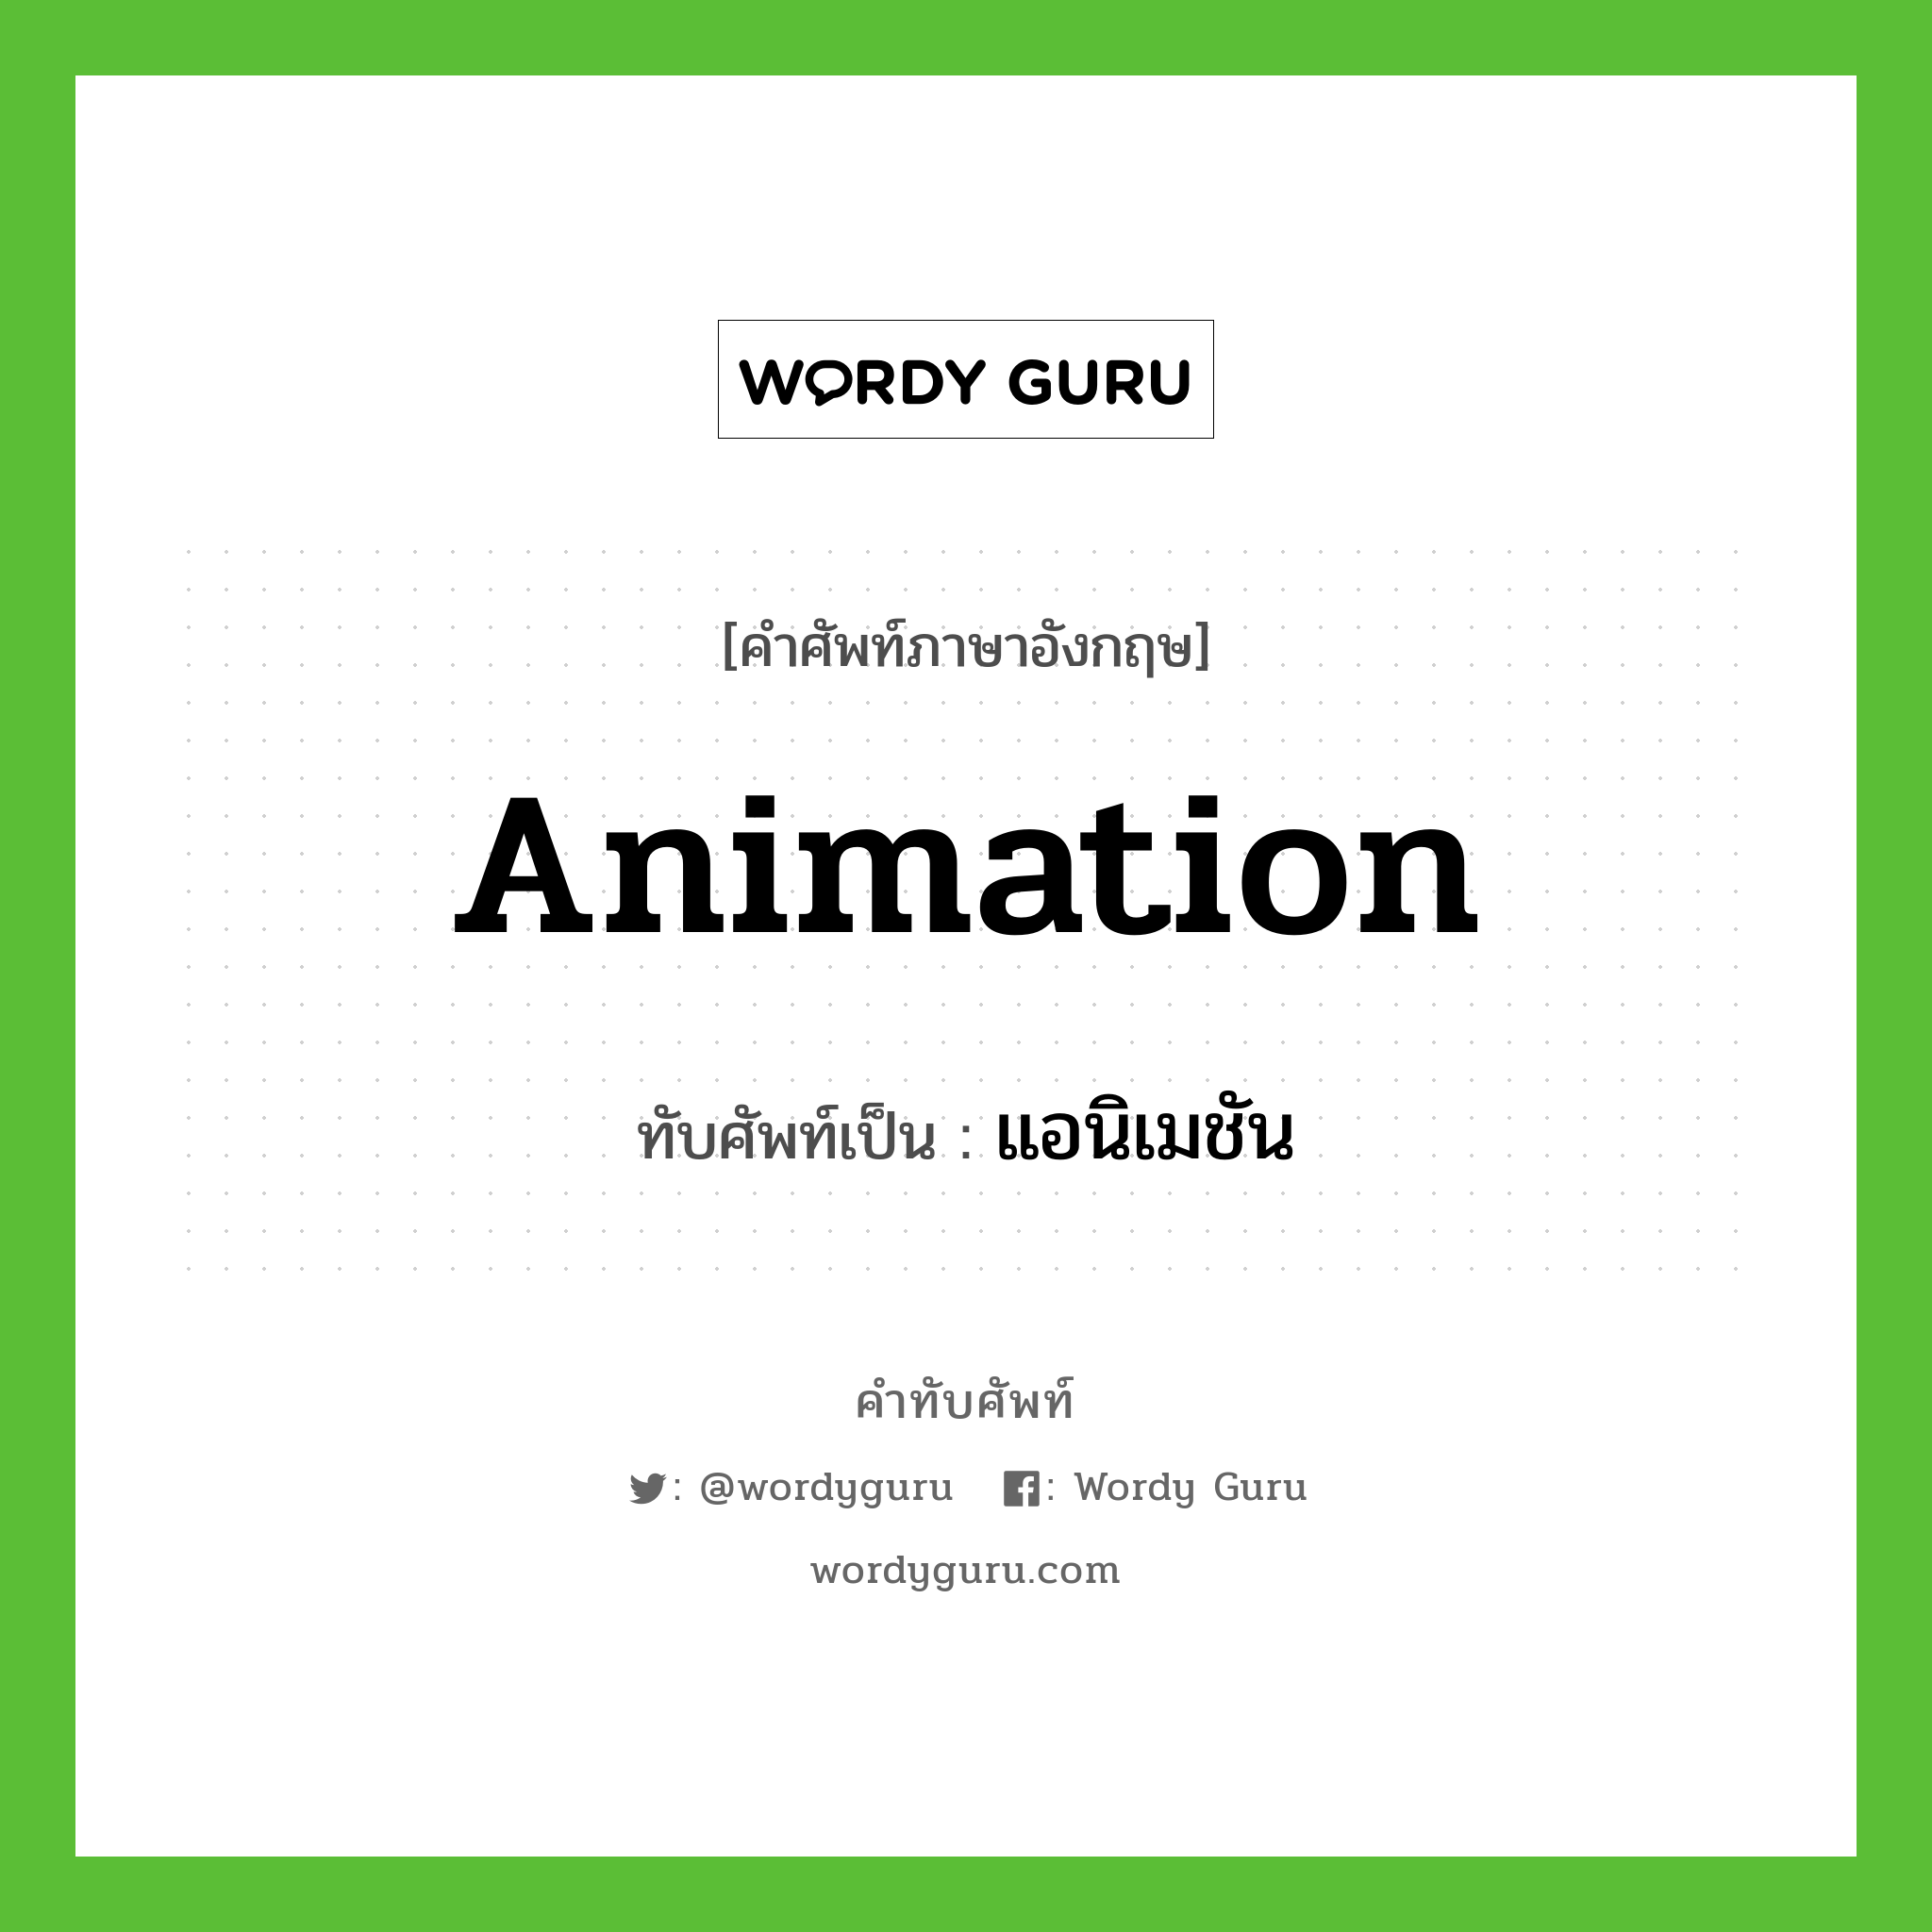 animation เขียนเป็นคำไทยว่าอะไร?, คำศัพท์ภาษาอังกฤษ animation ทับศัพท์เป็น แอนิเมชัน